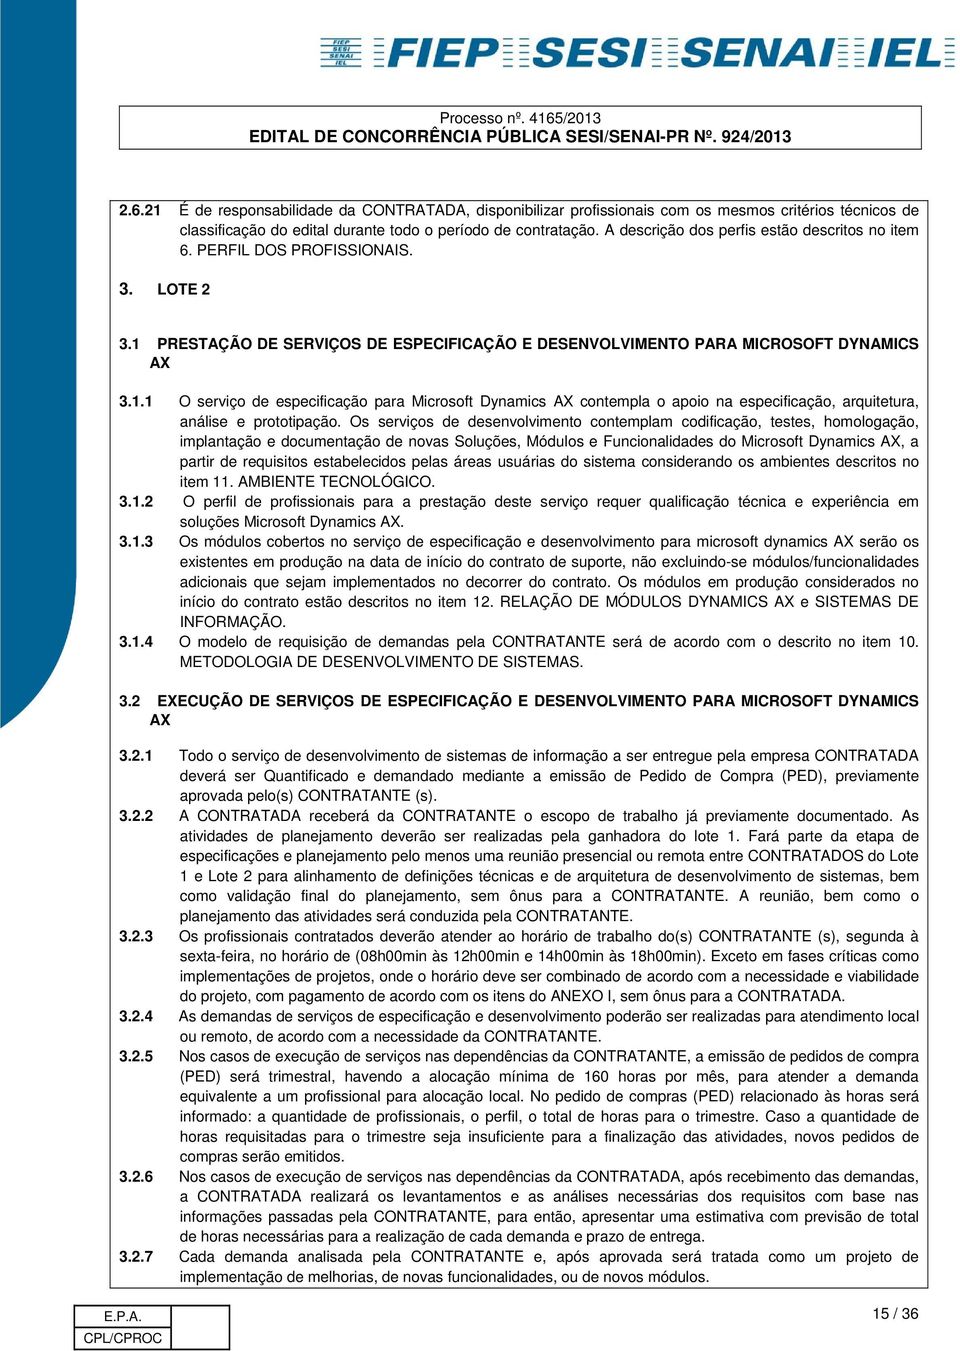 PRESTAÇÃO DE SERVIÇOS DE ESPECIFICAÇÃO E DESENVOLVIMENTO PARA MICROSOFT DYNAMICS AX 3.1.